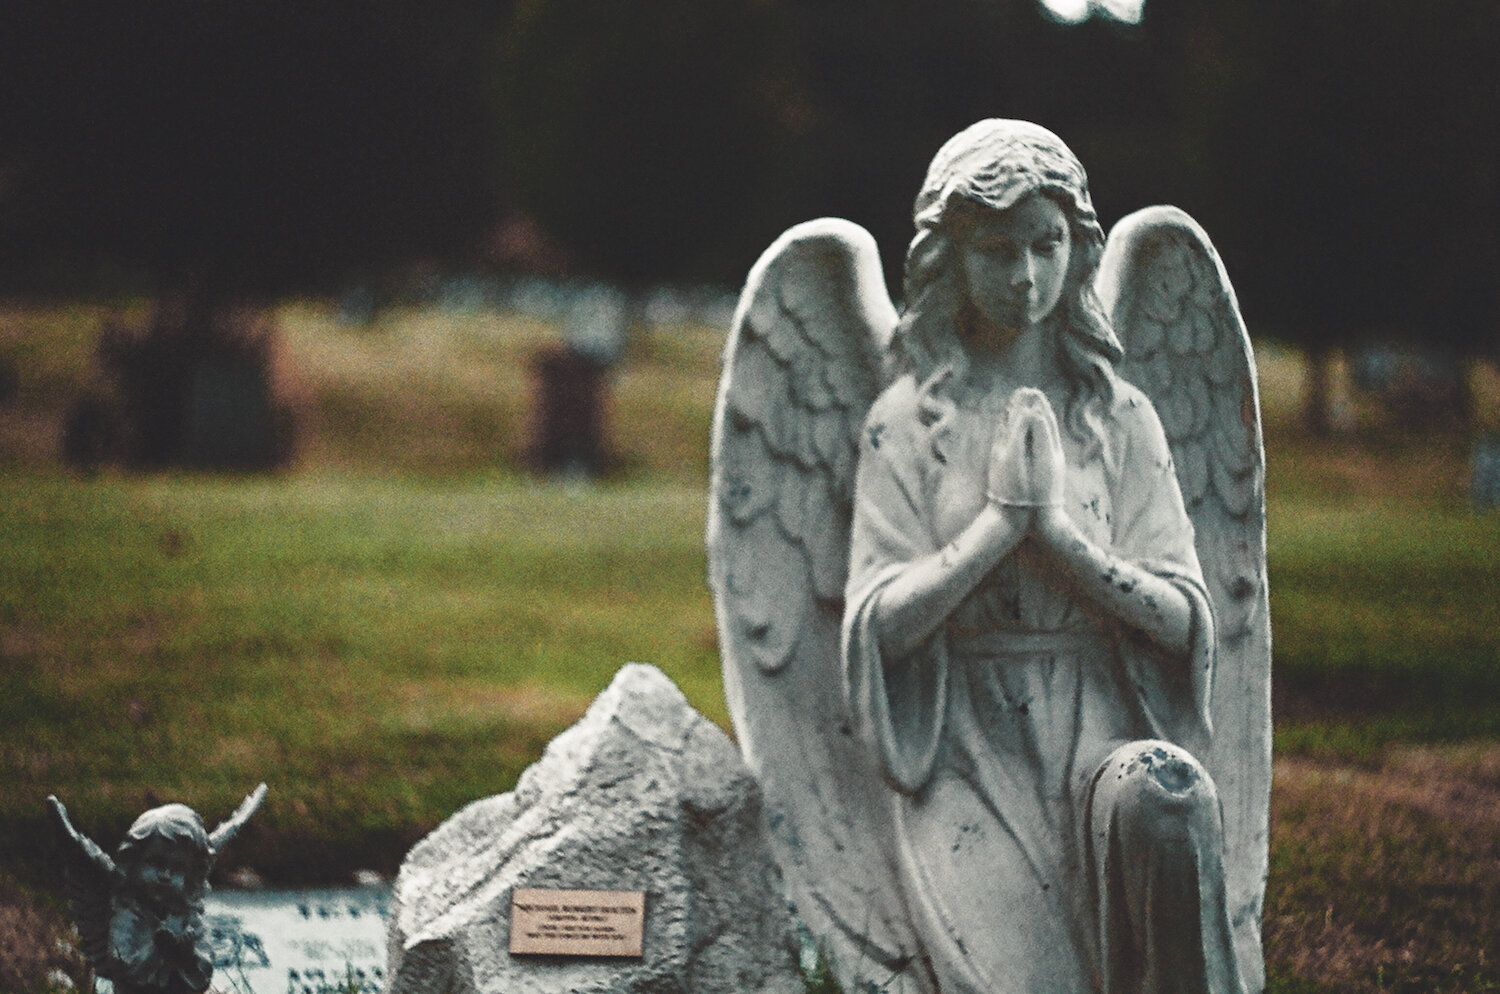 Film angels in the graveyard copy.jpg